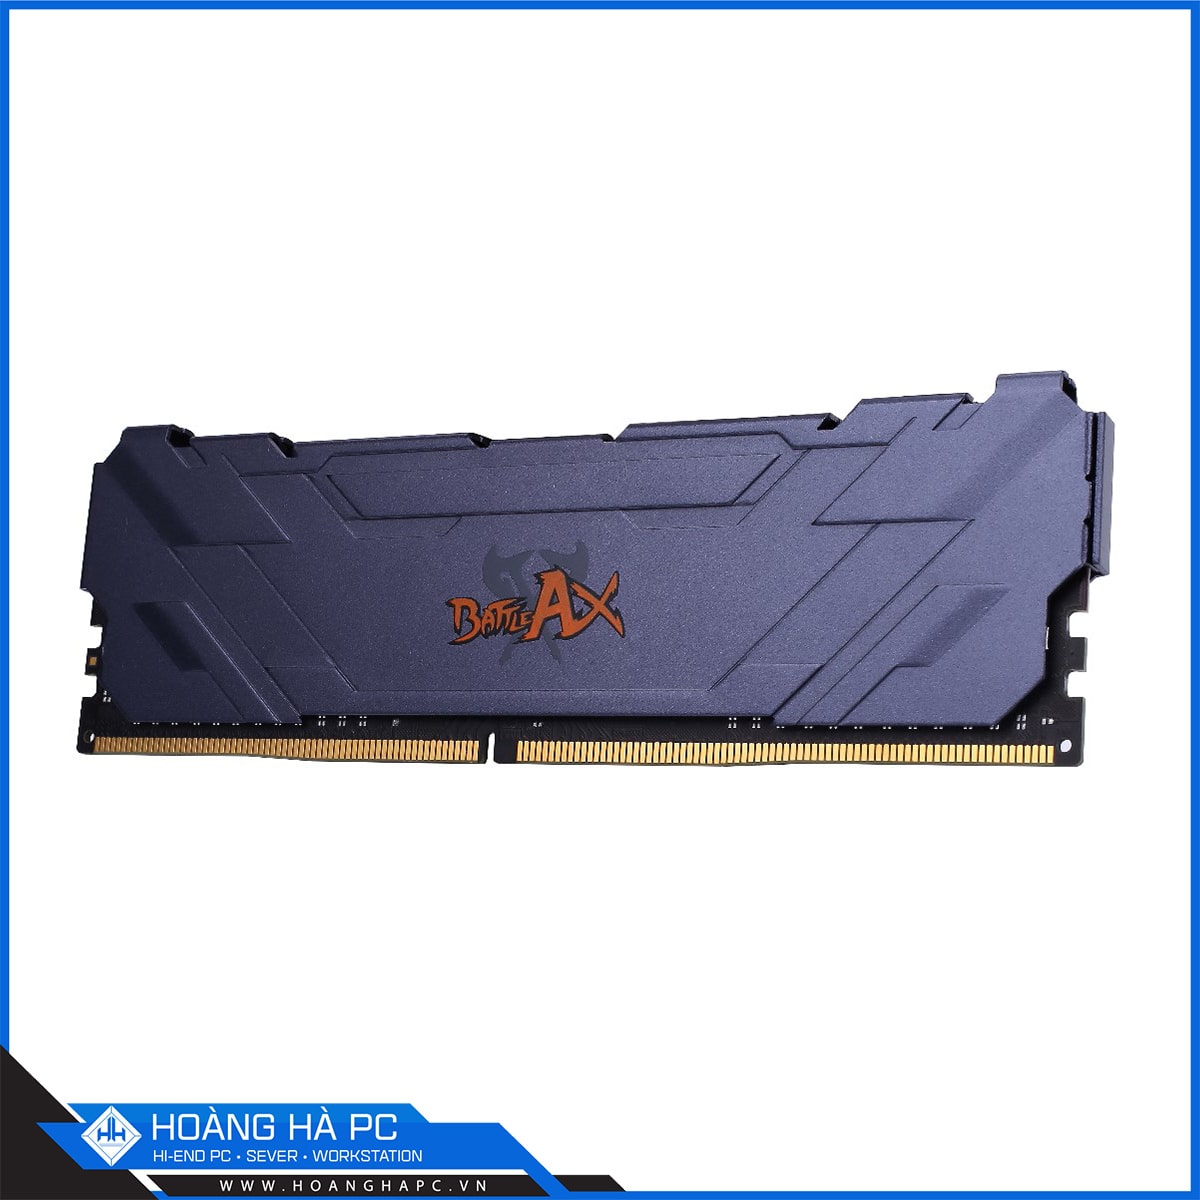 COLORFUL BATTLE AX 16GB BUS 3000 DDR4 